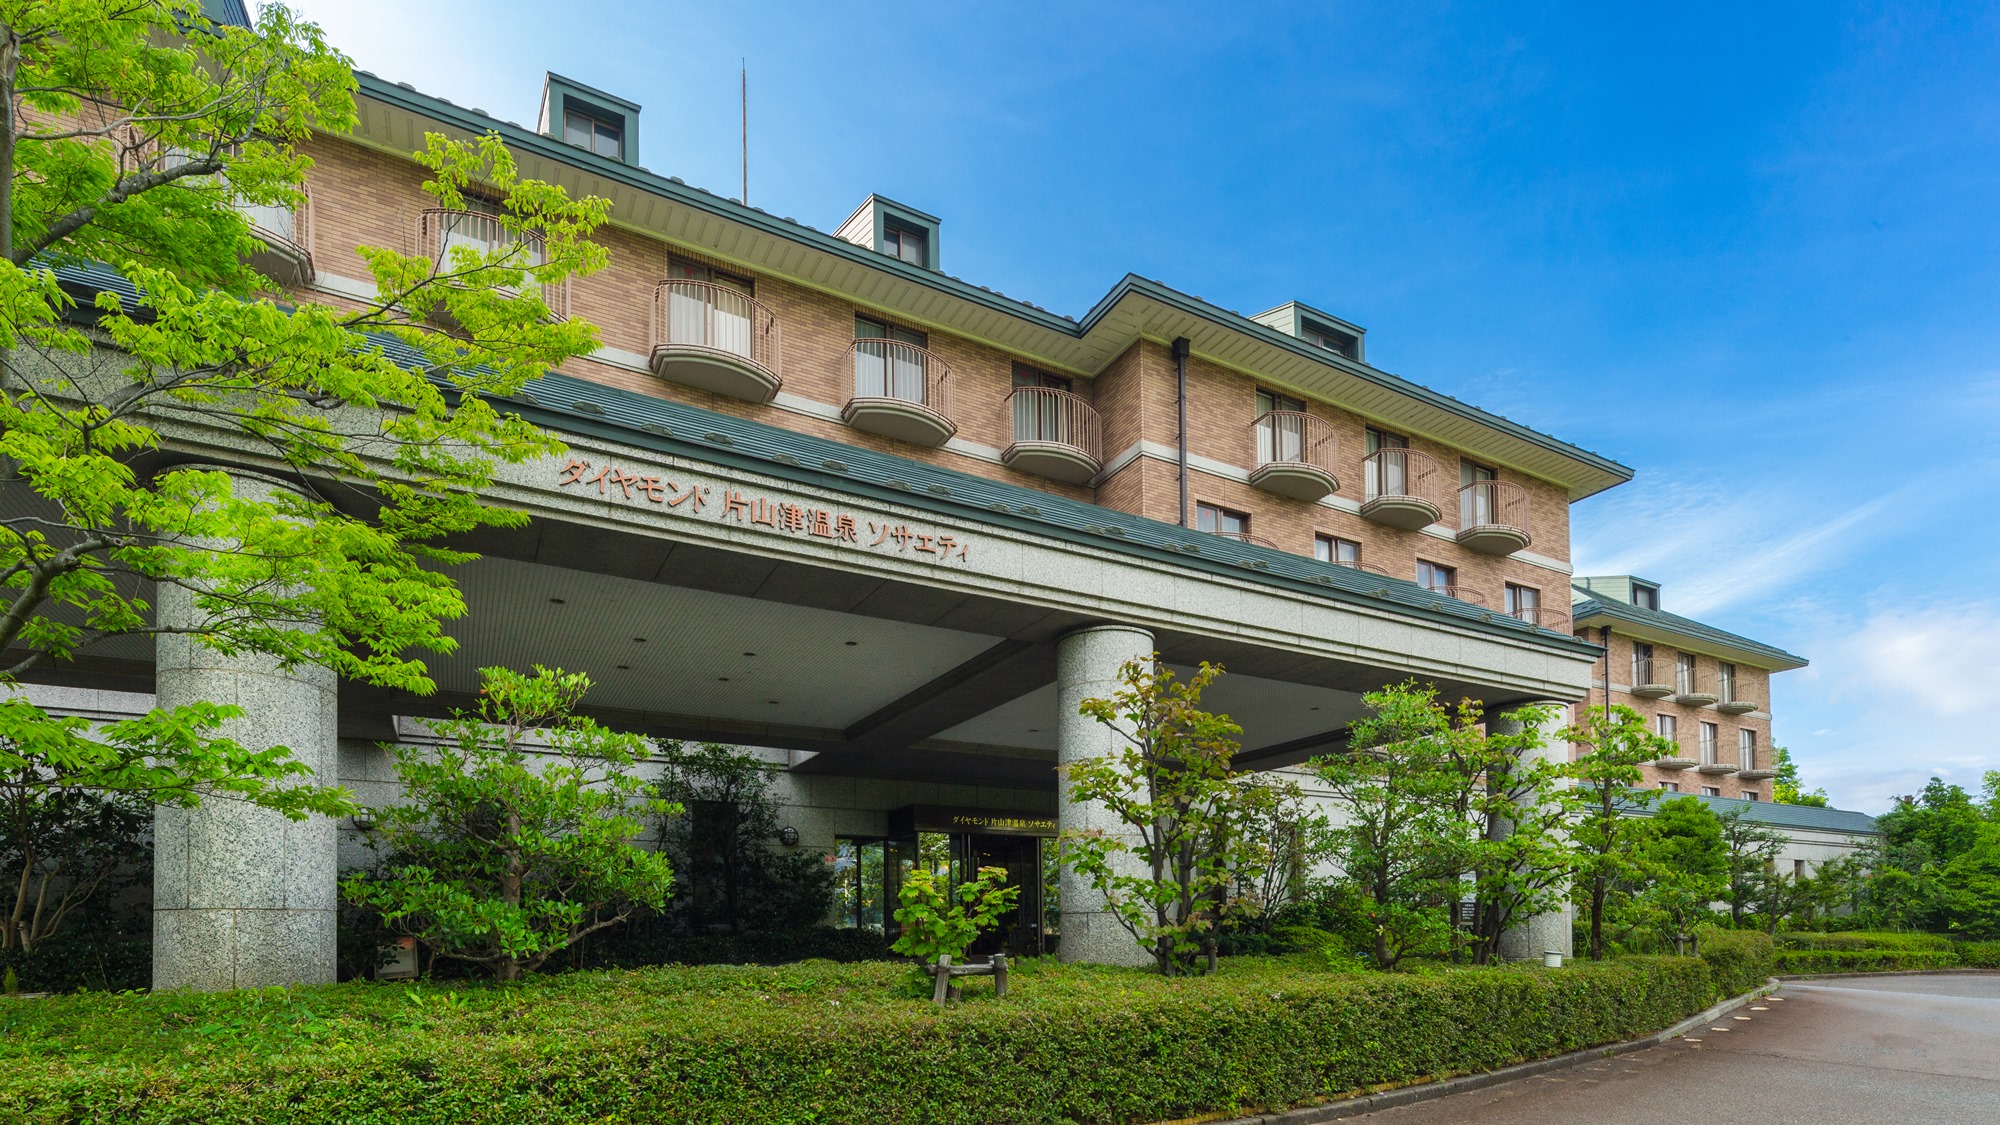 湯快リゾート 片山津温泉 New Maruyaホテル 加賀市 旅館 922 0412 の地図 アクセス 地点情報 Navitime